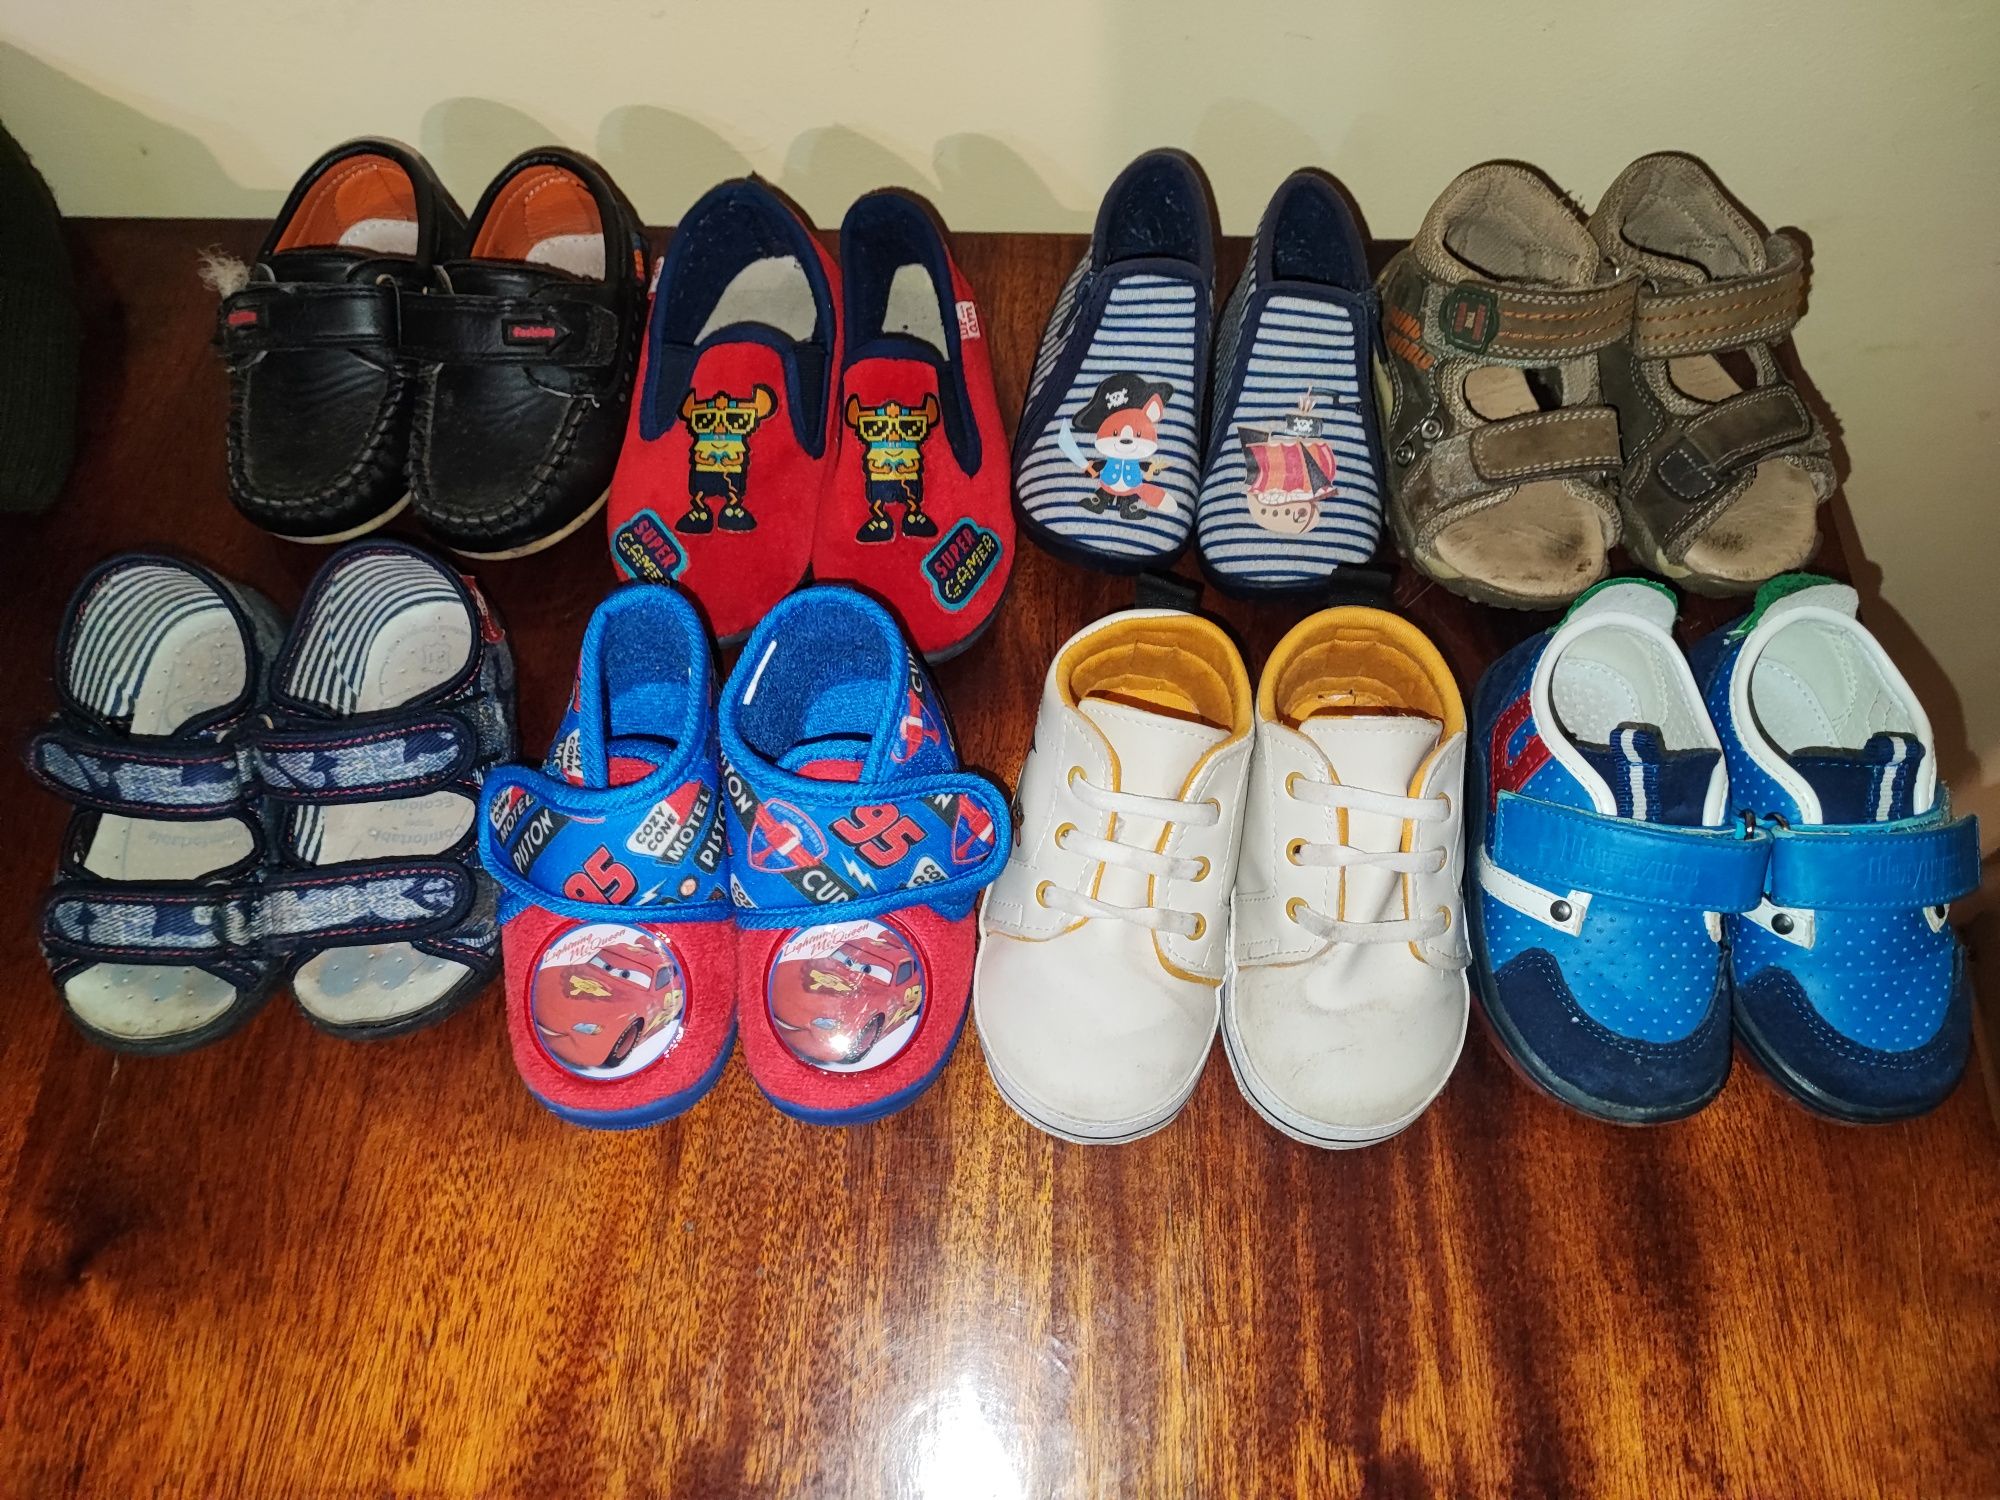 Дитяче взуття різних розмірів